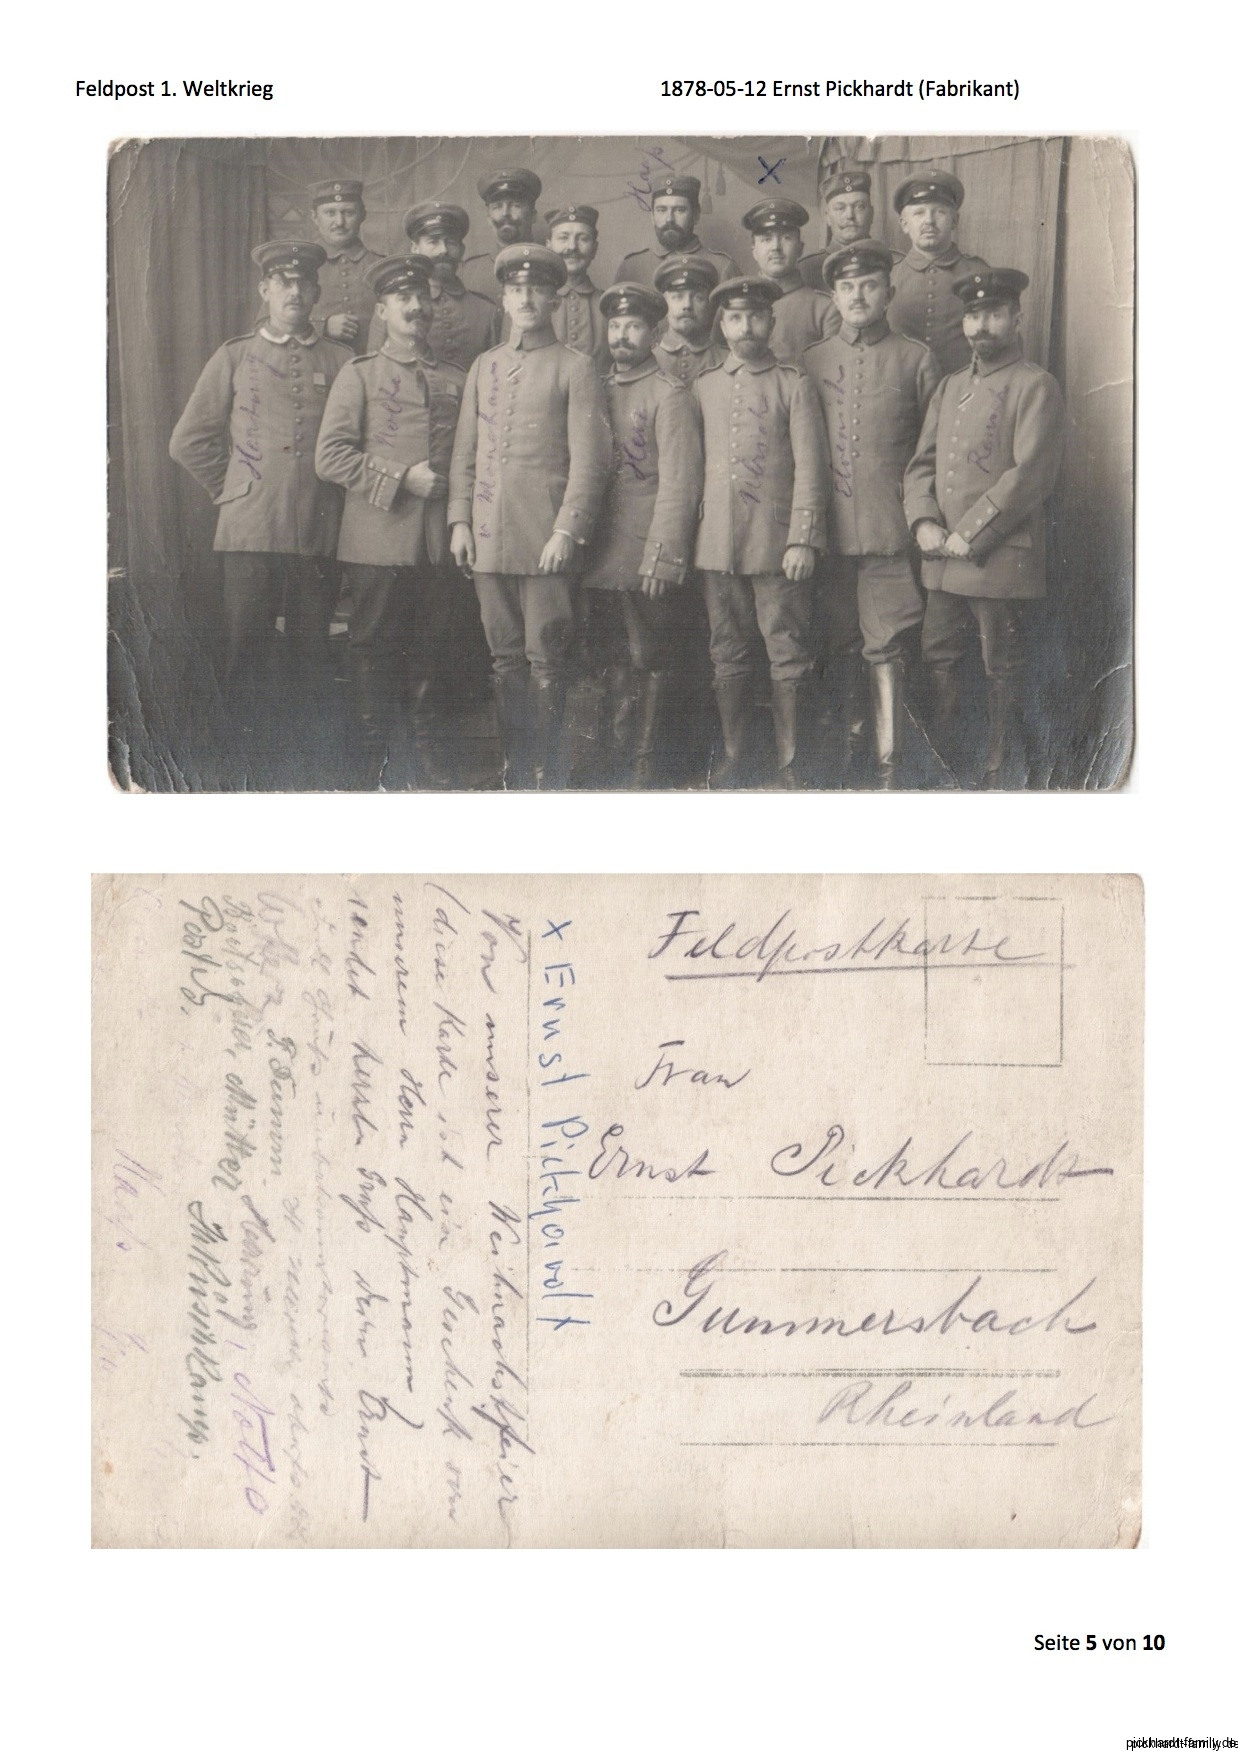 1914 Feldpost von Ernst Pickardt als Einjährig-Freiwilliger in Russland4